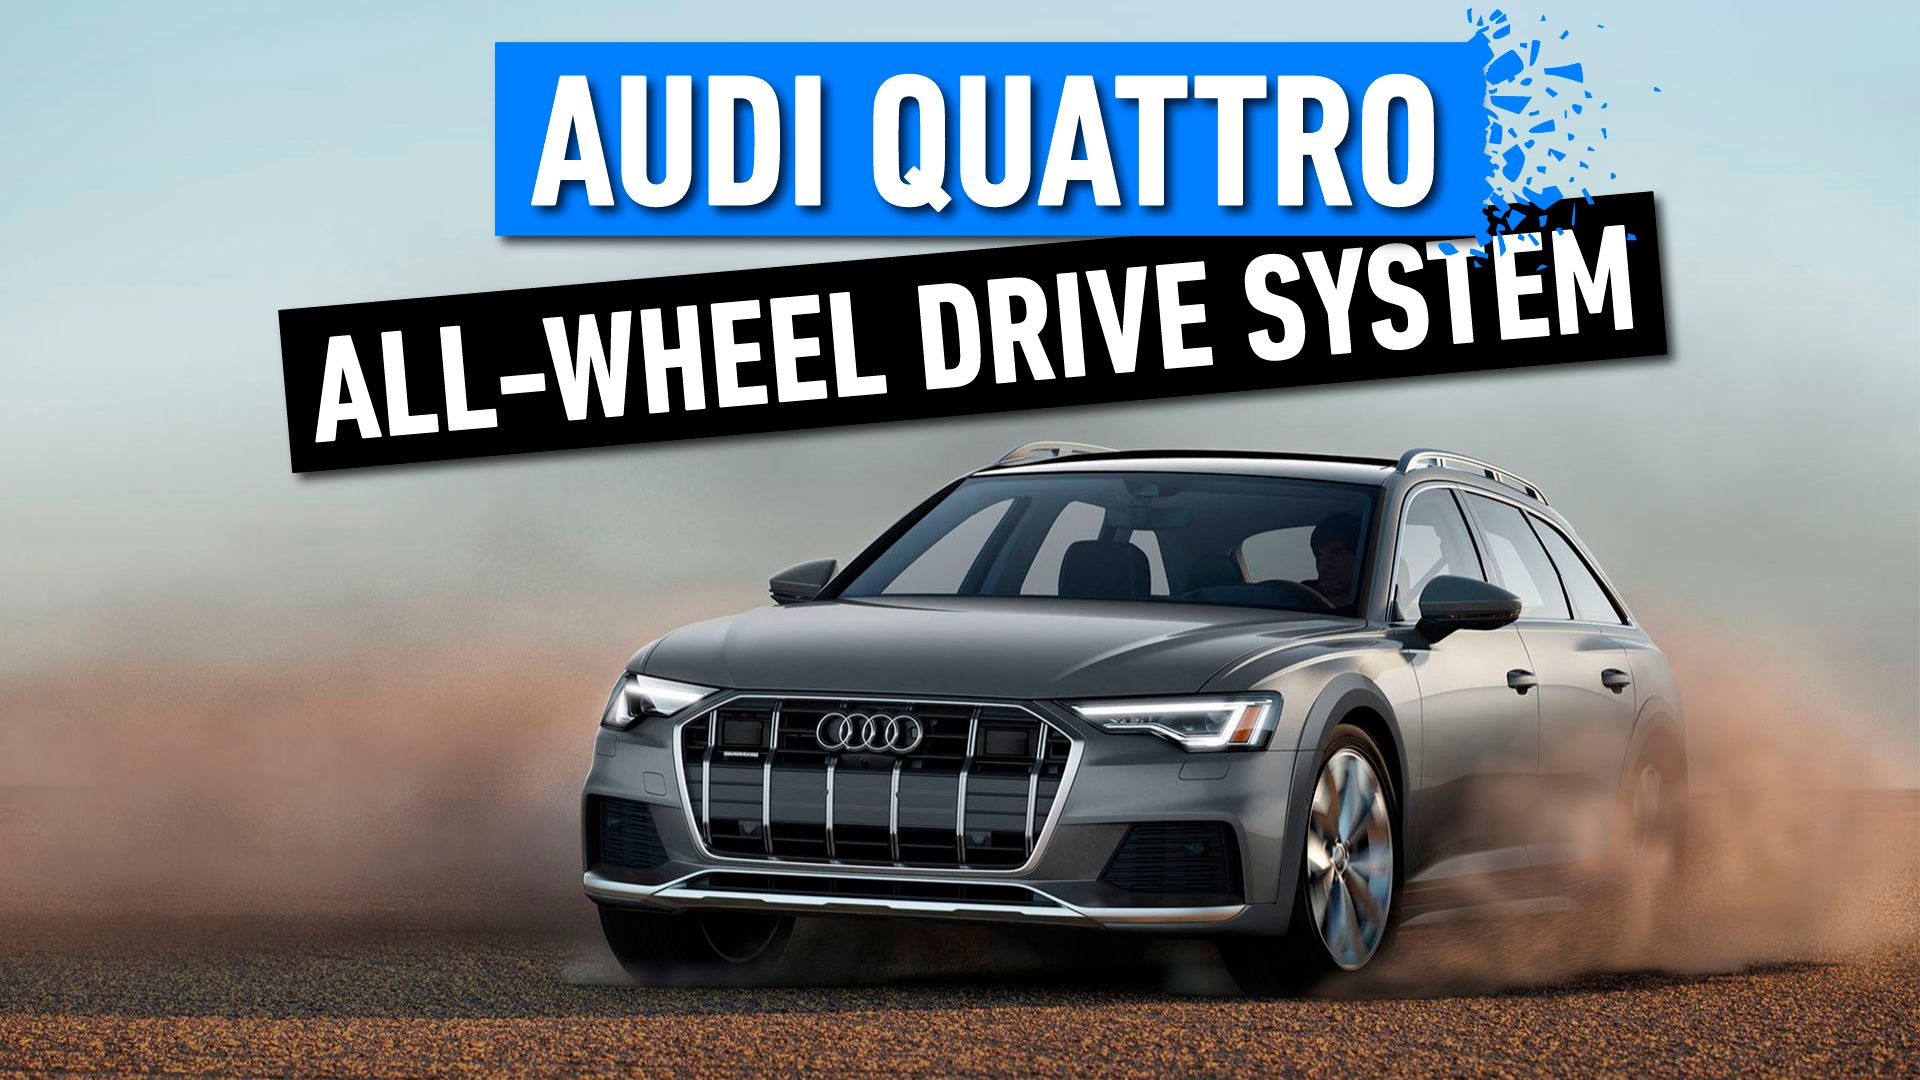 Audi-Quattro-All-Wheel-Drive